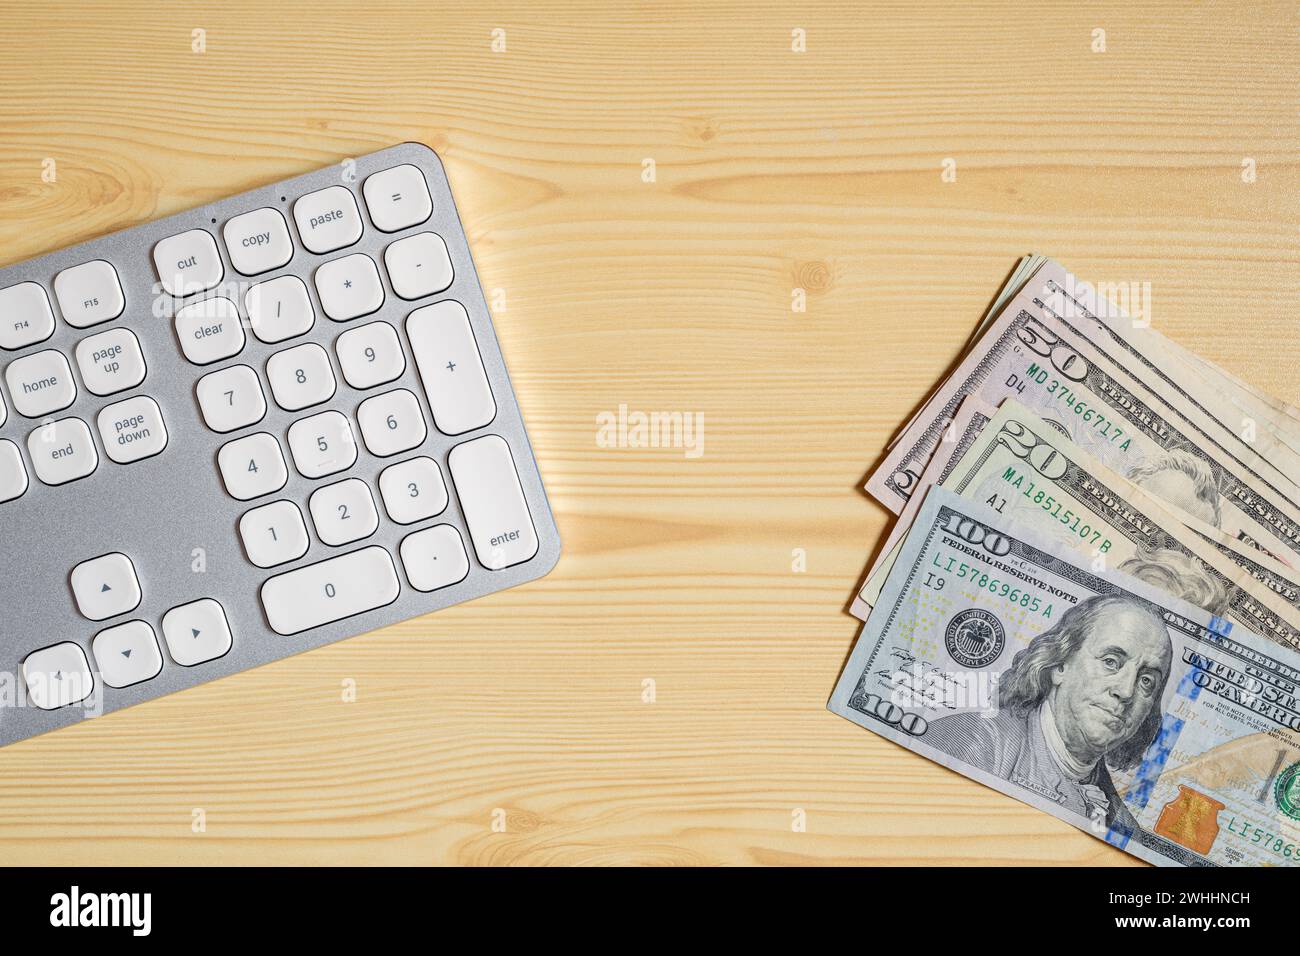 PC desktop tastiera e banconote in dollari americani sulla scrivania, vista dall'alto Foto Stock